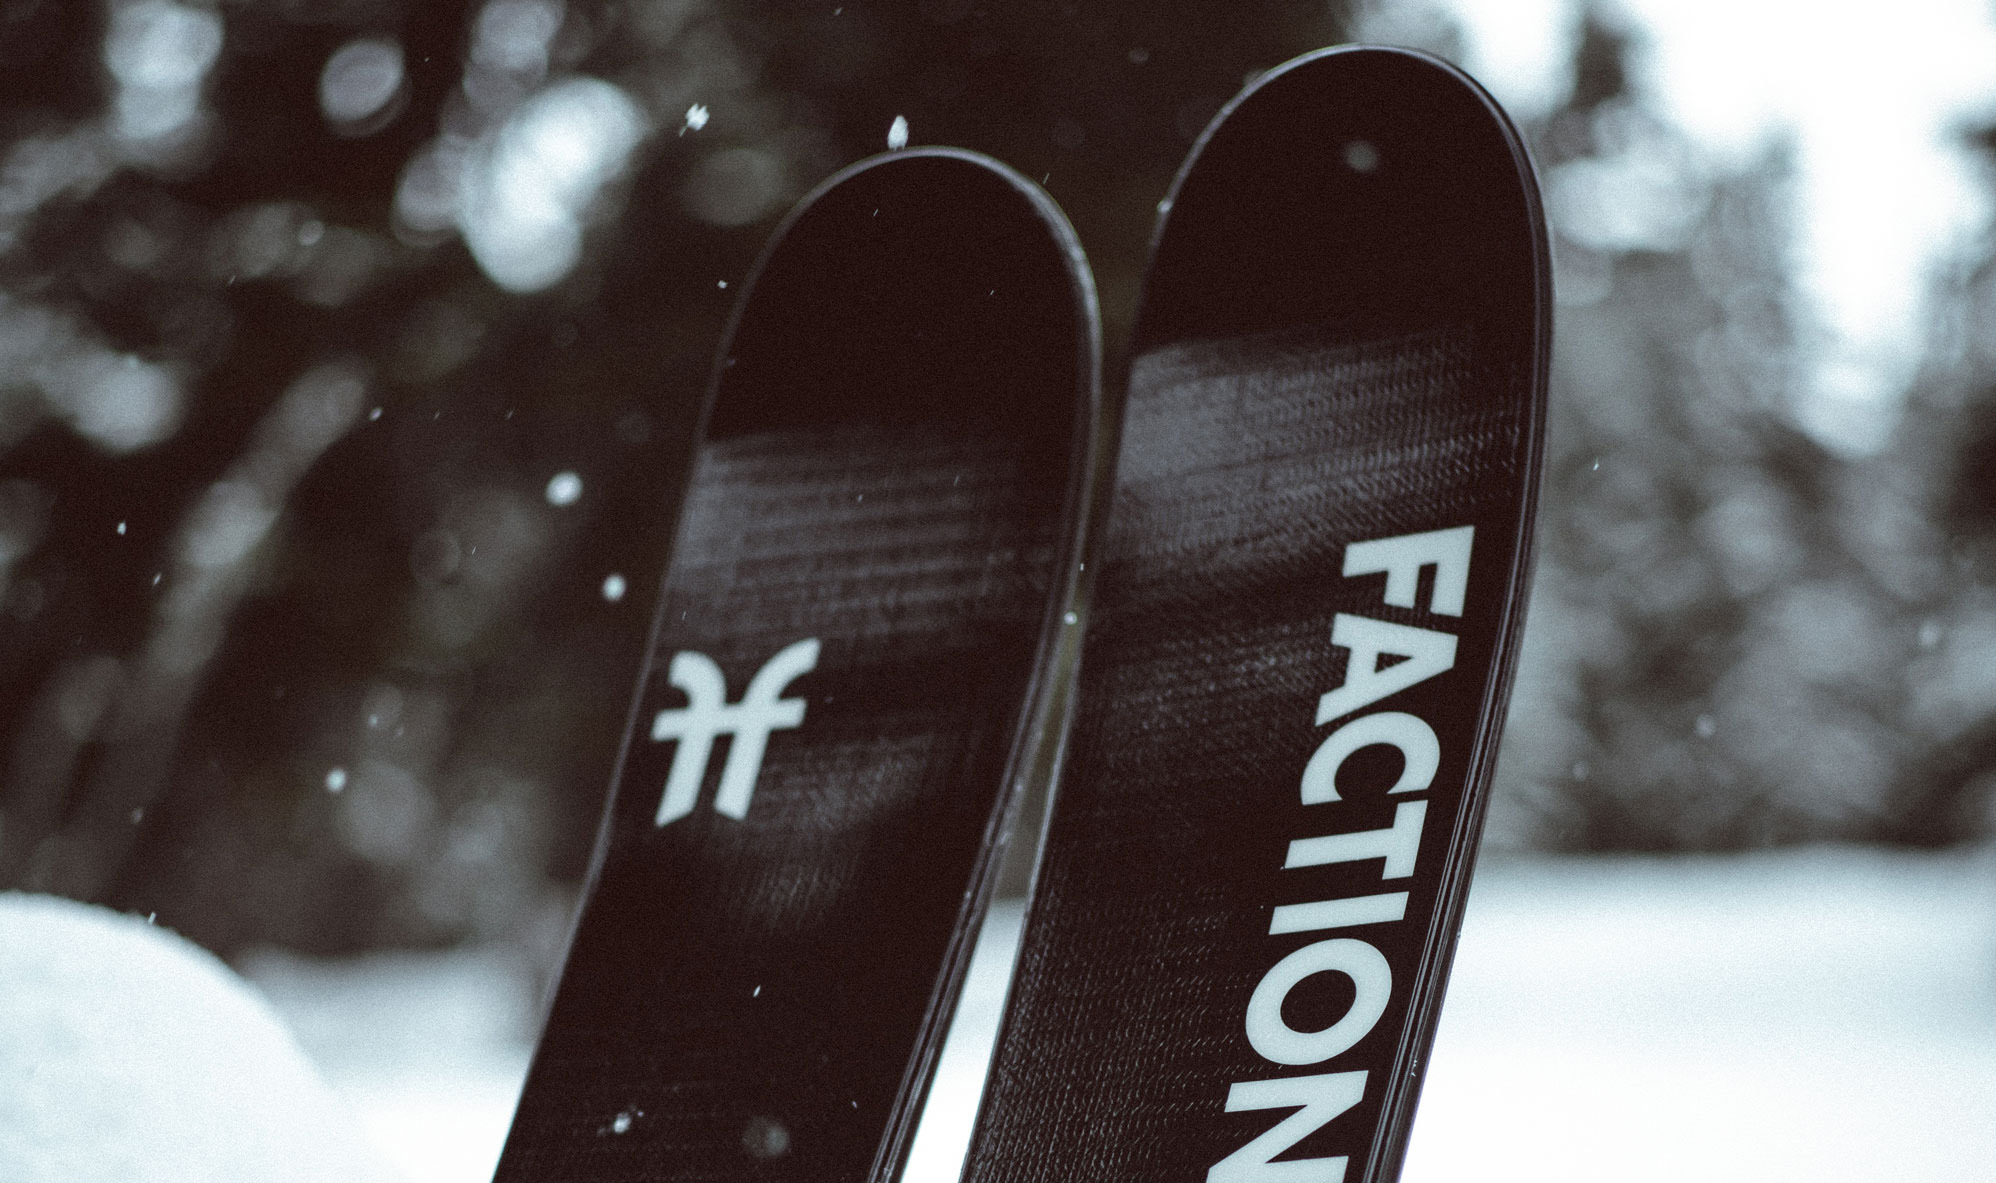 Faction Skis 2023 Mana 2 | All-Mountain Twin-Tip Ski – Faction Skis CA